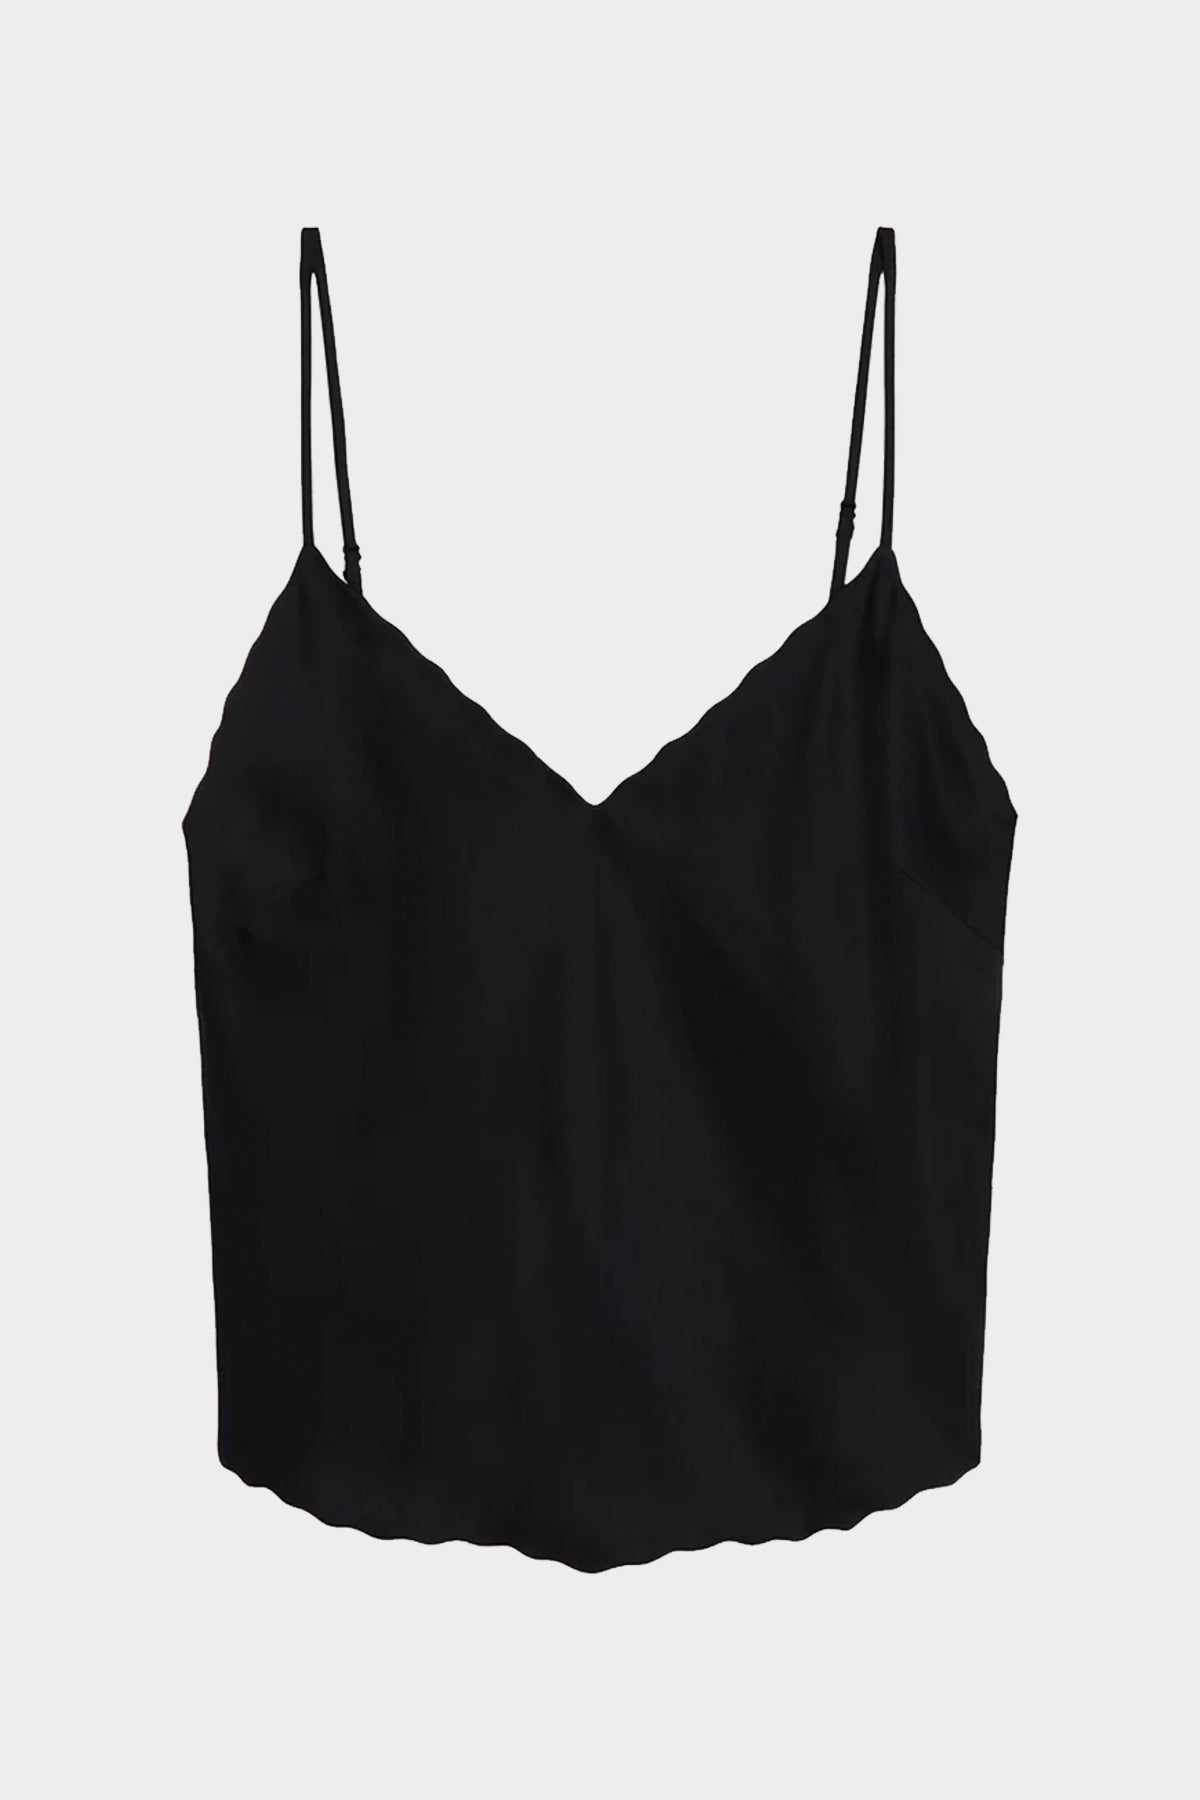 Malia Scalloped Camisole Top in Black - shop-olivia.com